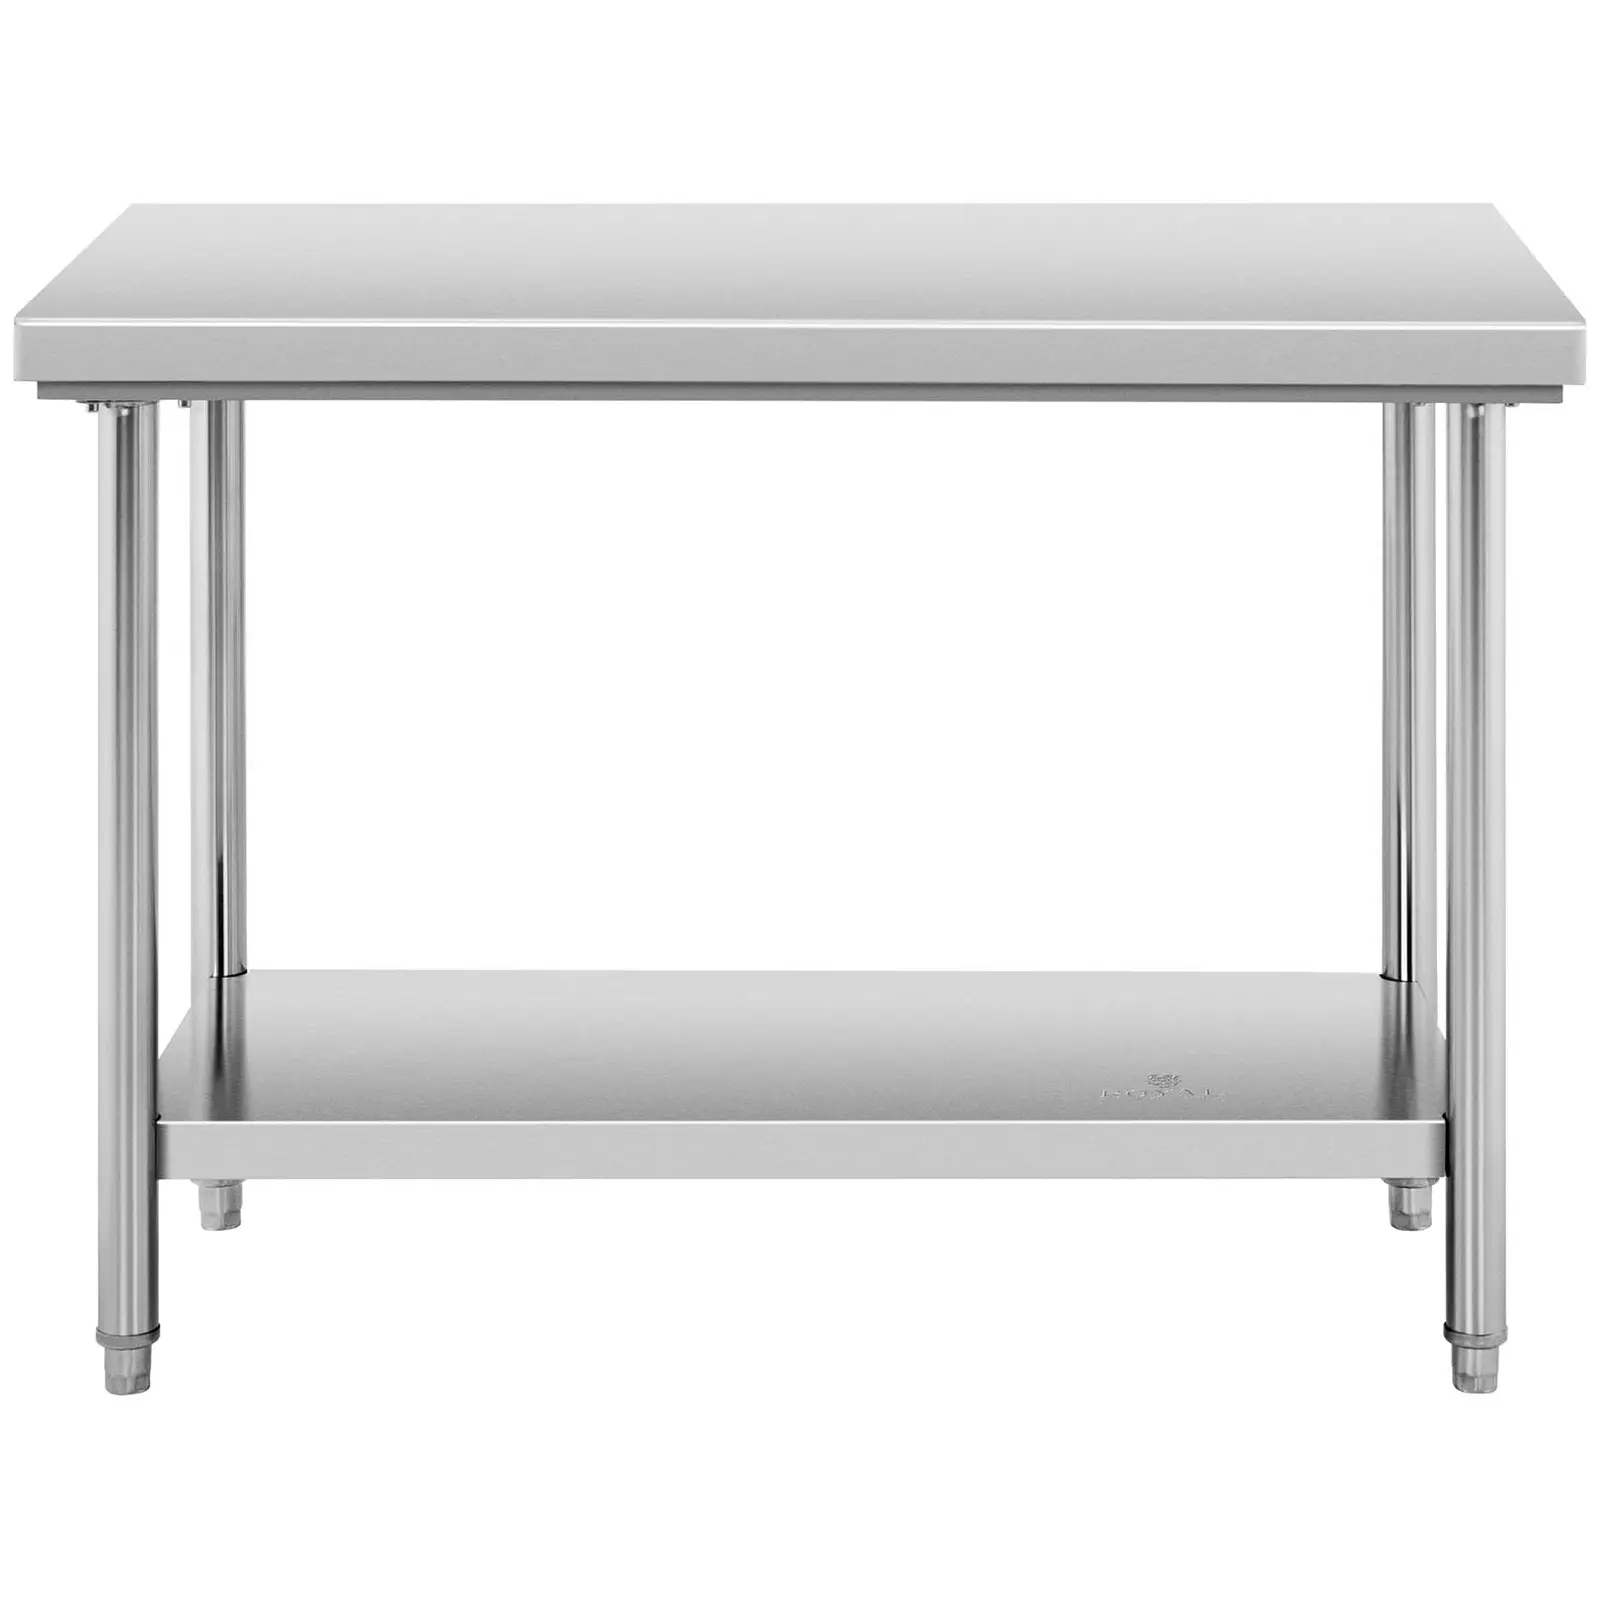 Stůl z ušlechtilé oceli - 120 x 67 cm - nosnost 143 kg - Royal Catering